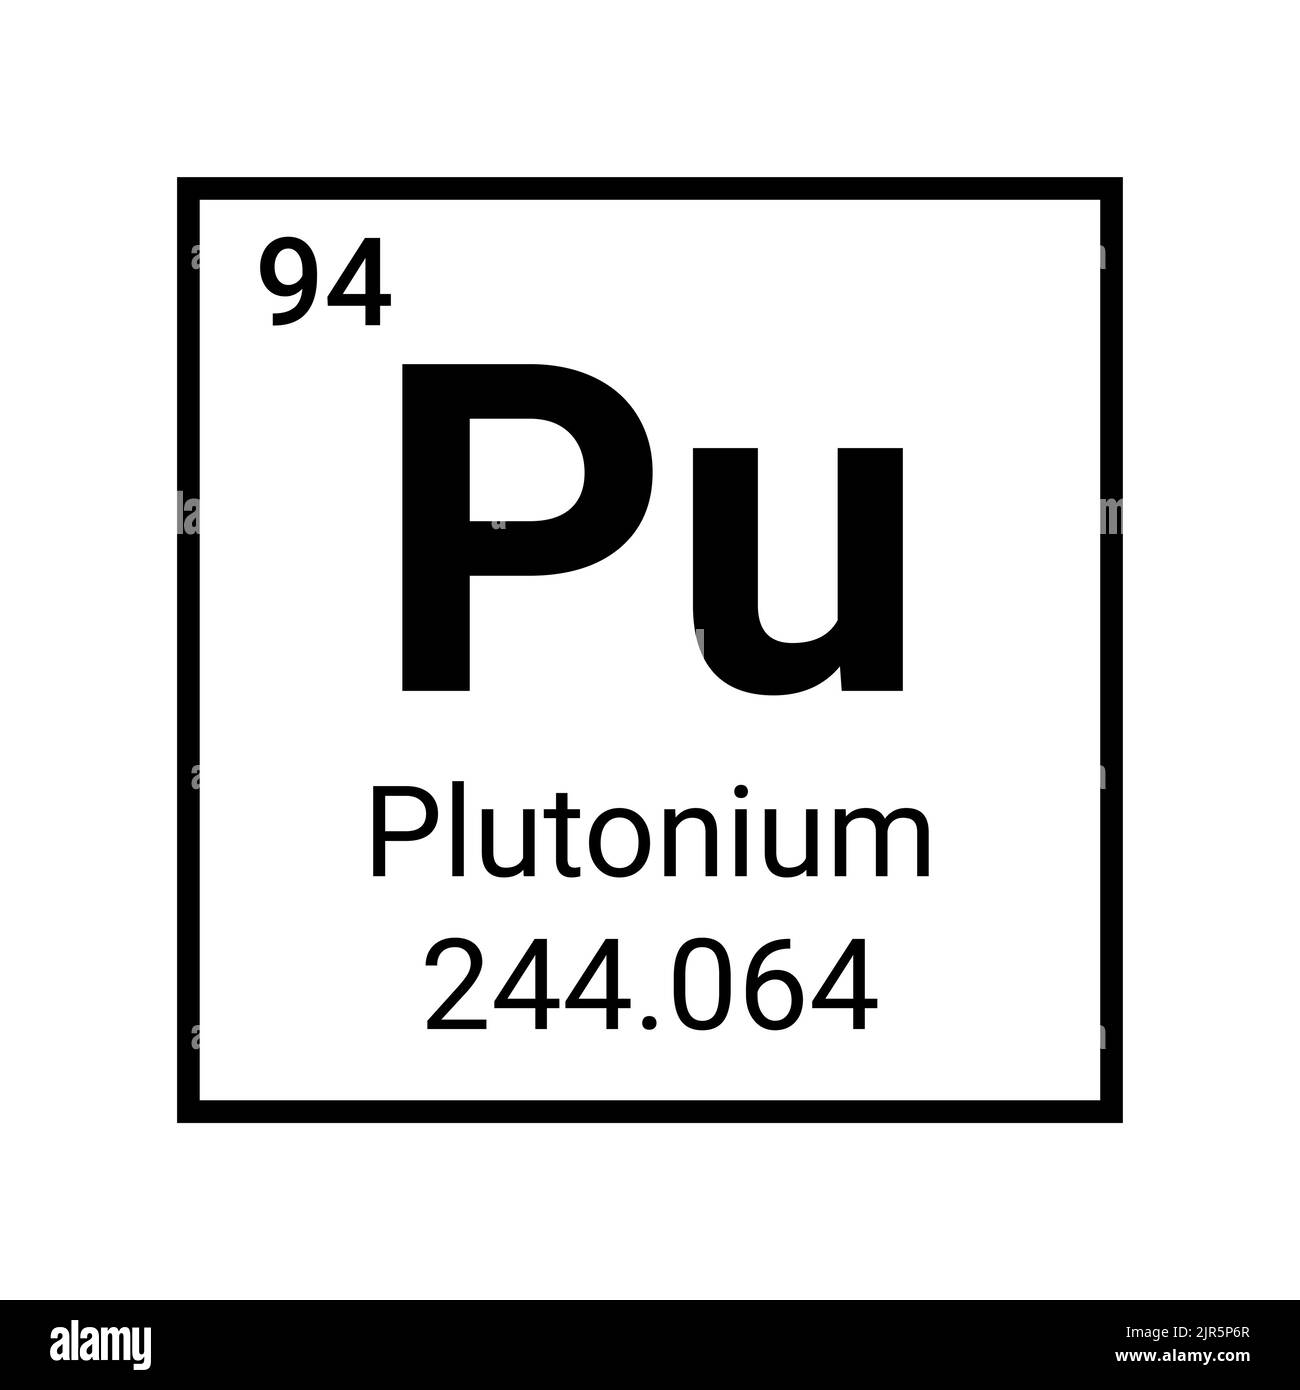 Plutonium chemical element symbol icon. Atom plutonium sign periodic table. Stock Vector